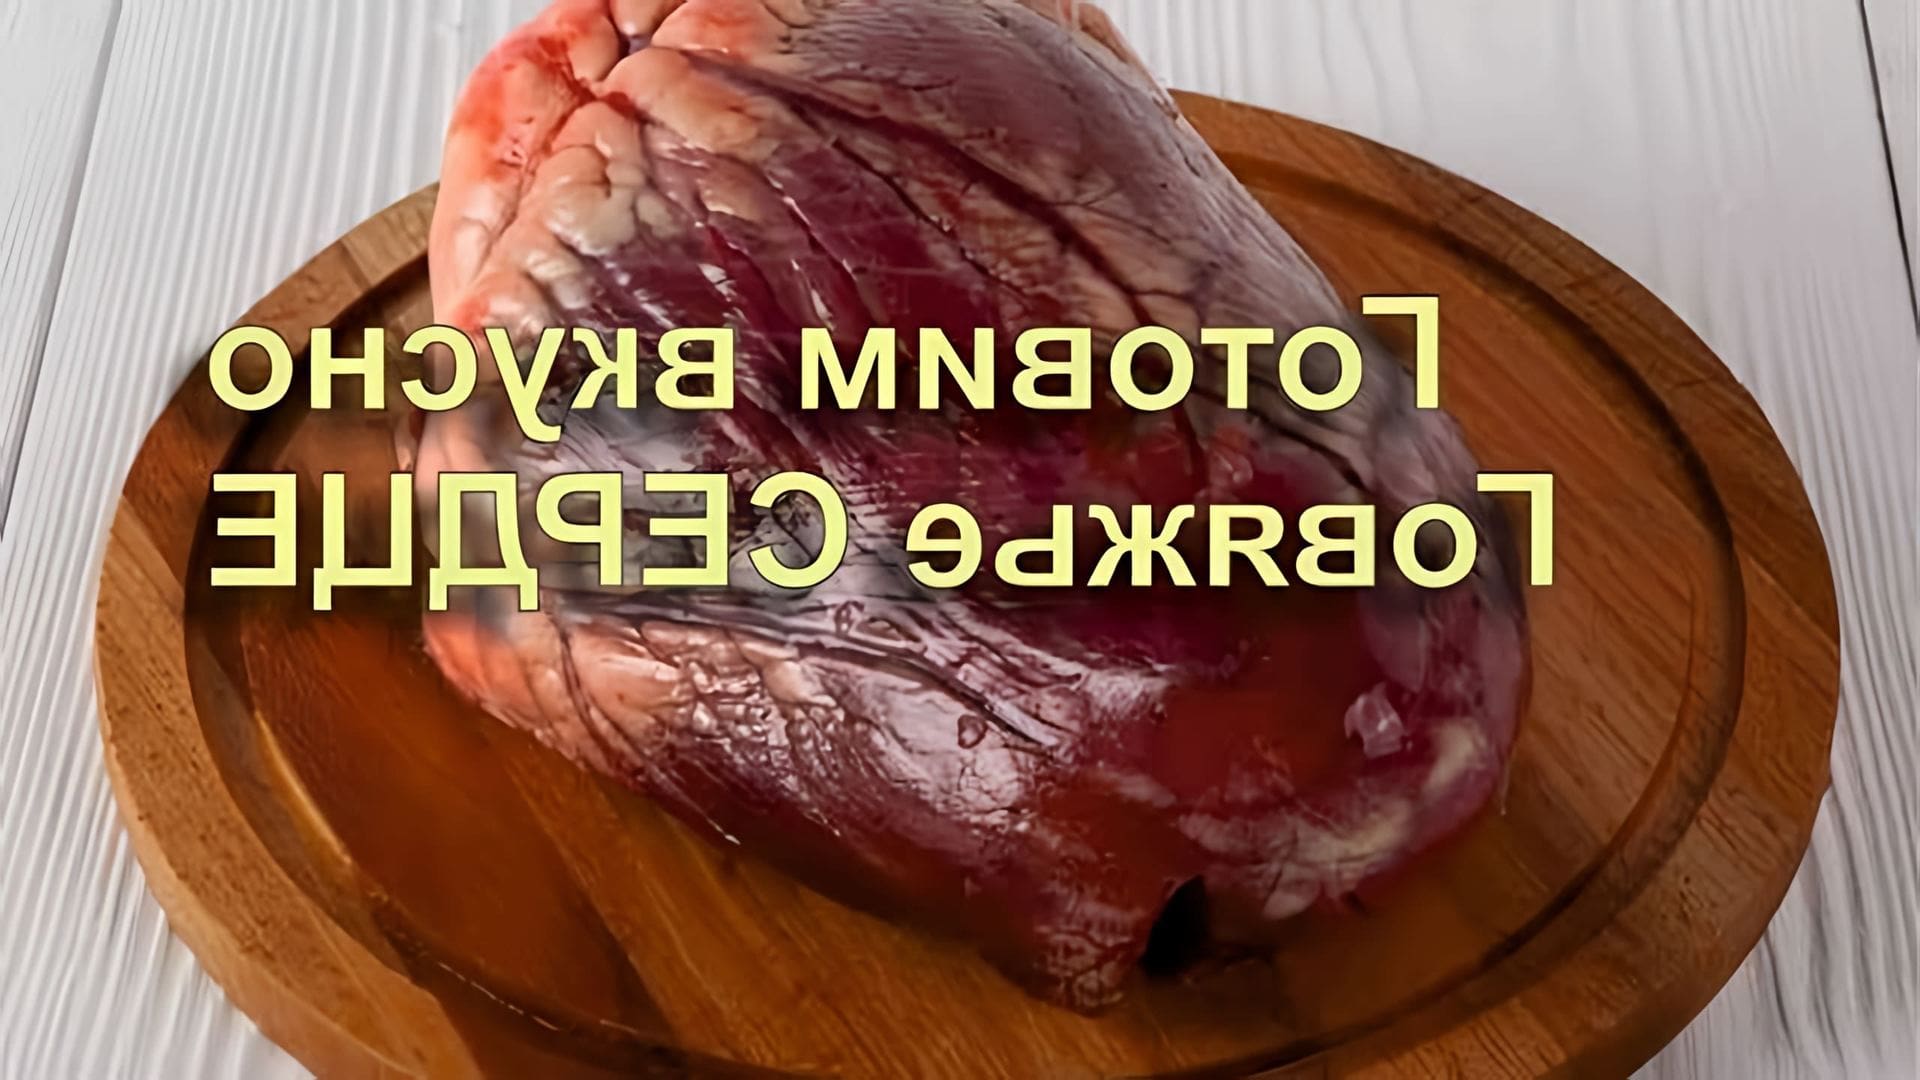 В этом видео демонстрируется процесс приготовления говяжьего сердца с луком